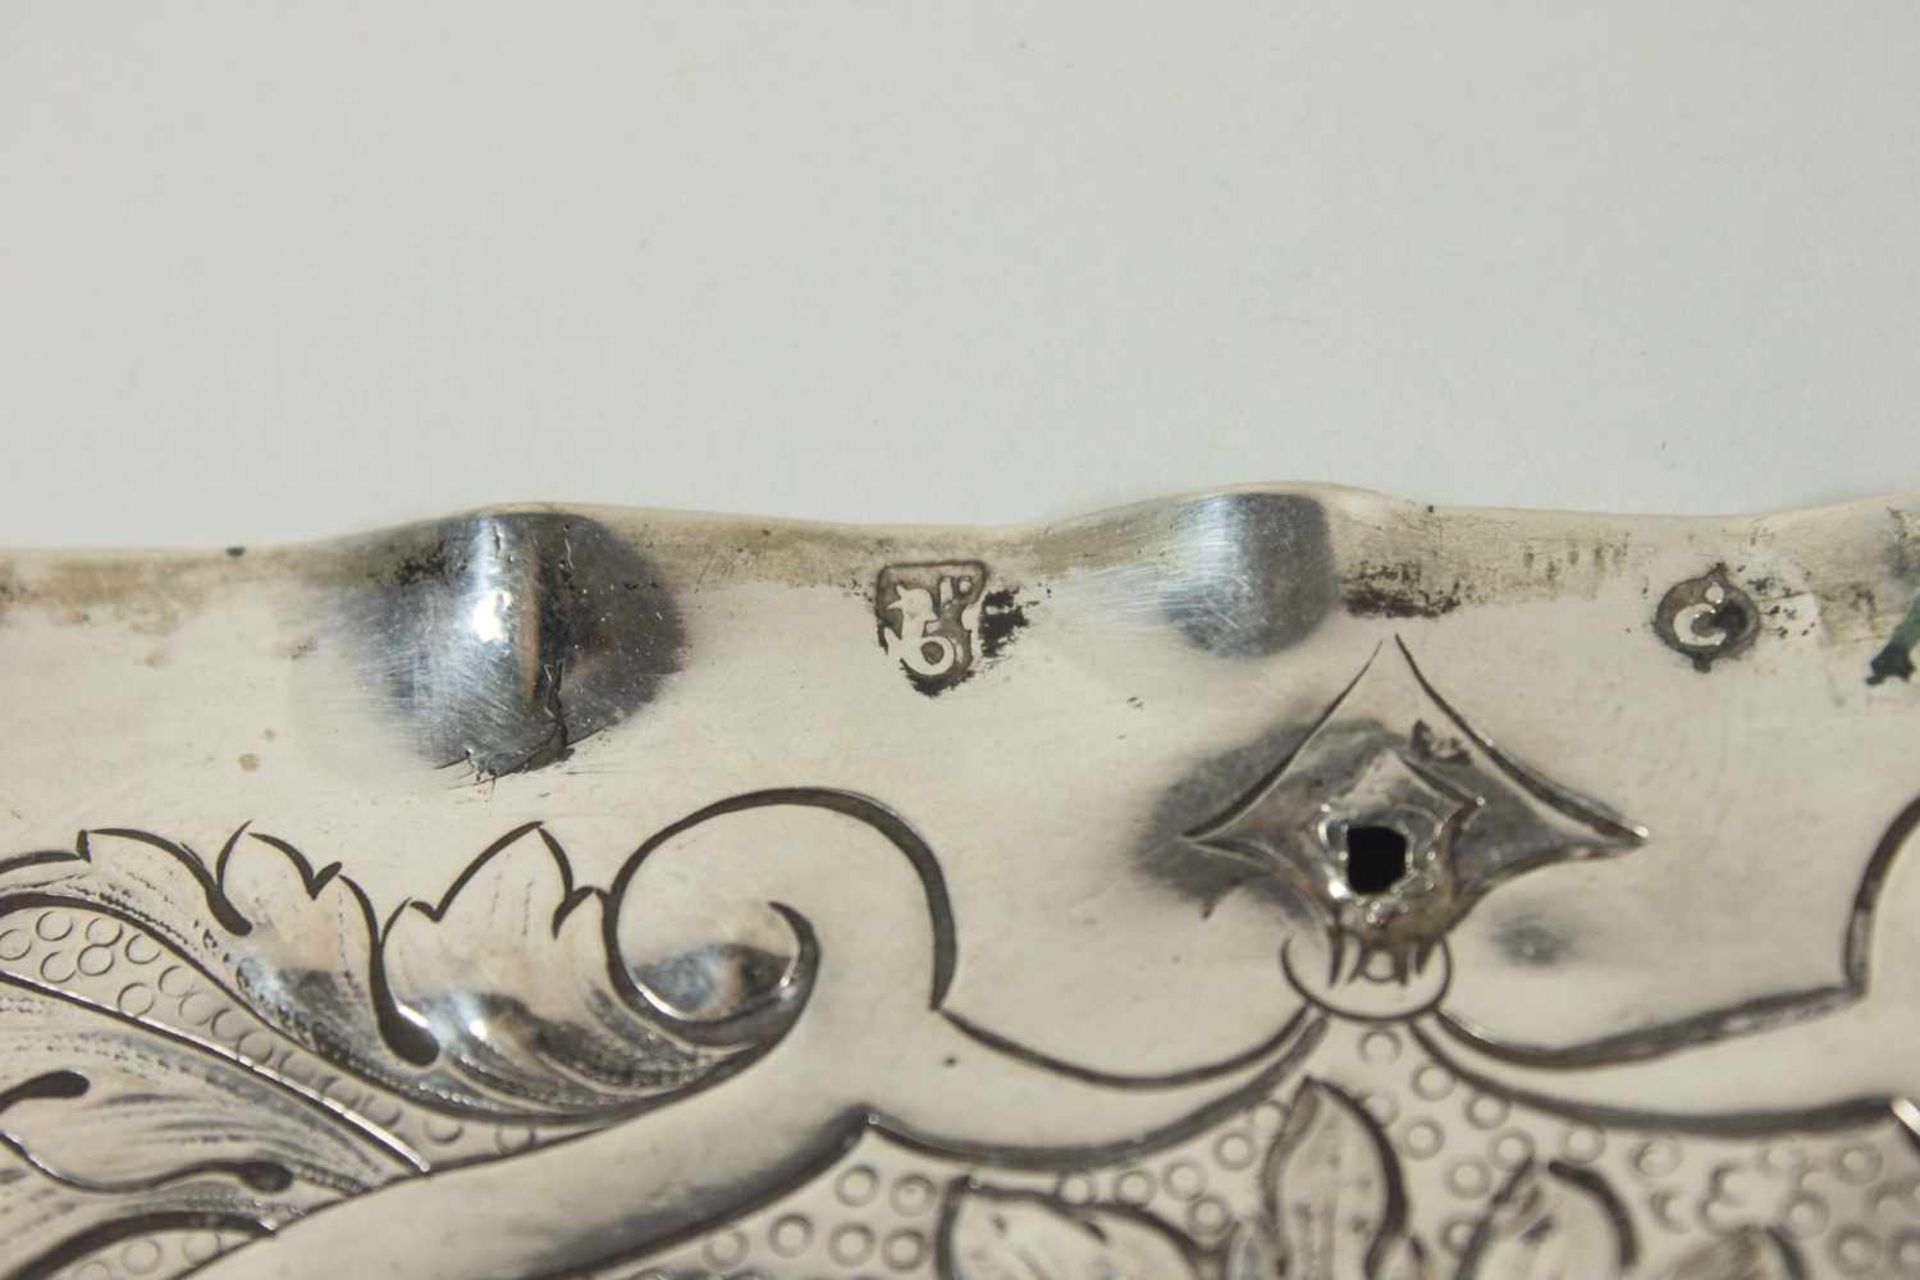 Schauplatte, J.D. SCHLEISSNER & SÖHNE Hanau, Silber, gepunzt, Ovale Platte mit gekniffenen Rand, - Image 2 of 2